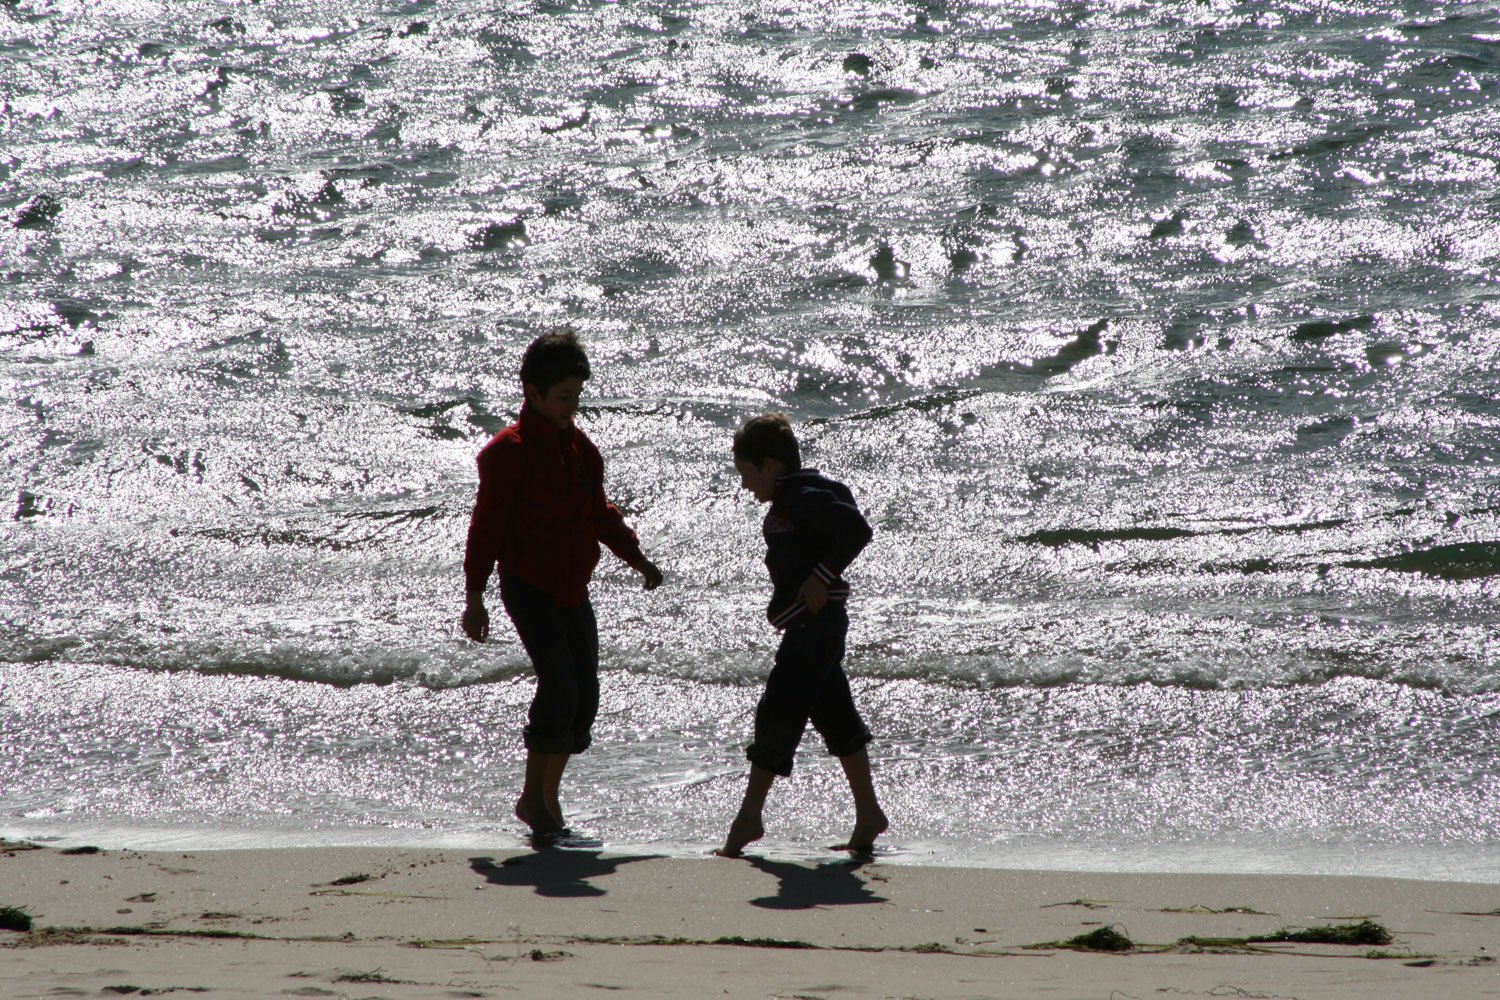 two people walking on a beach near the ocean